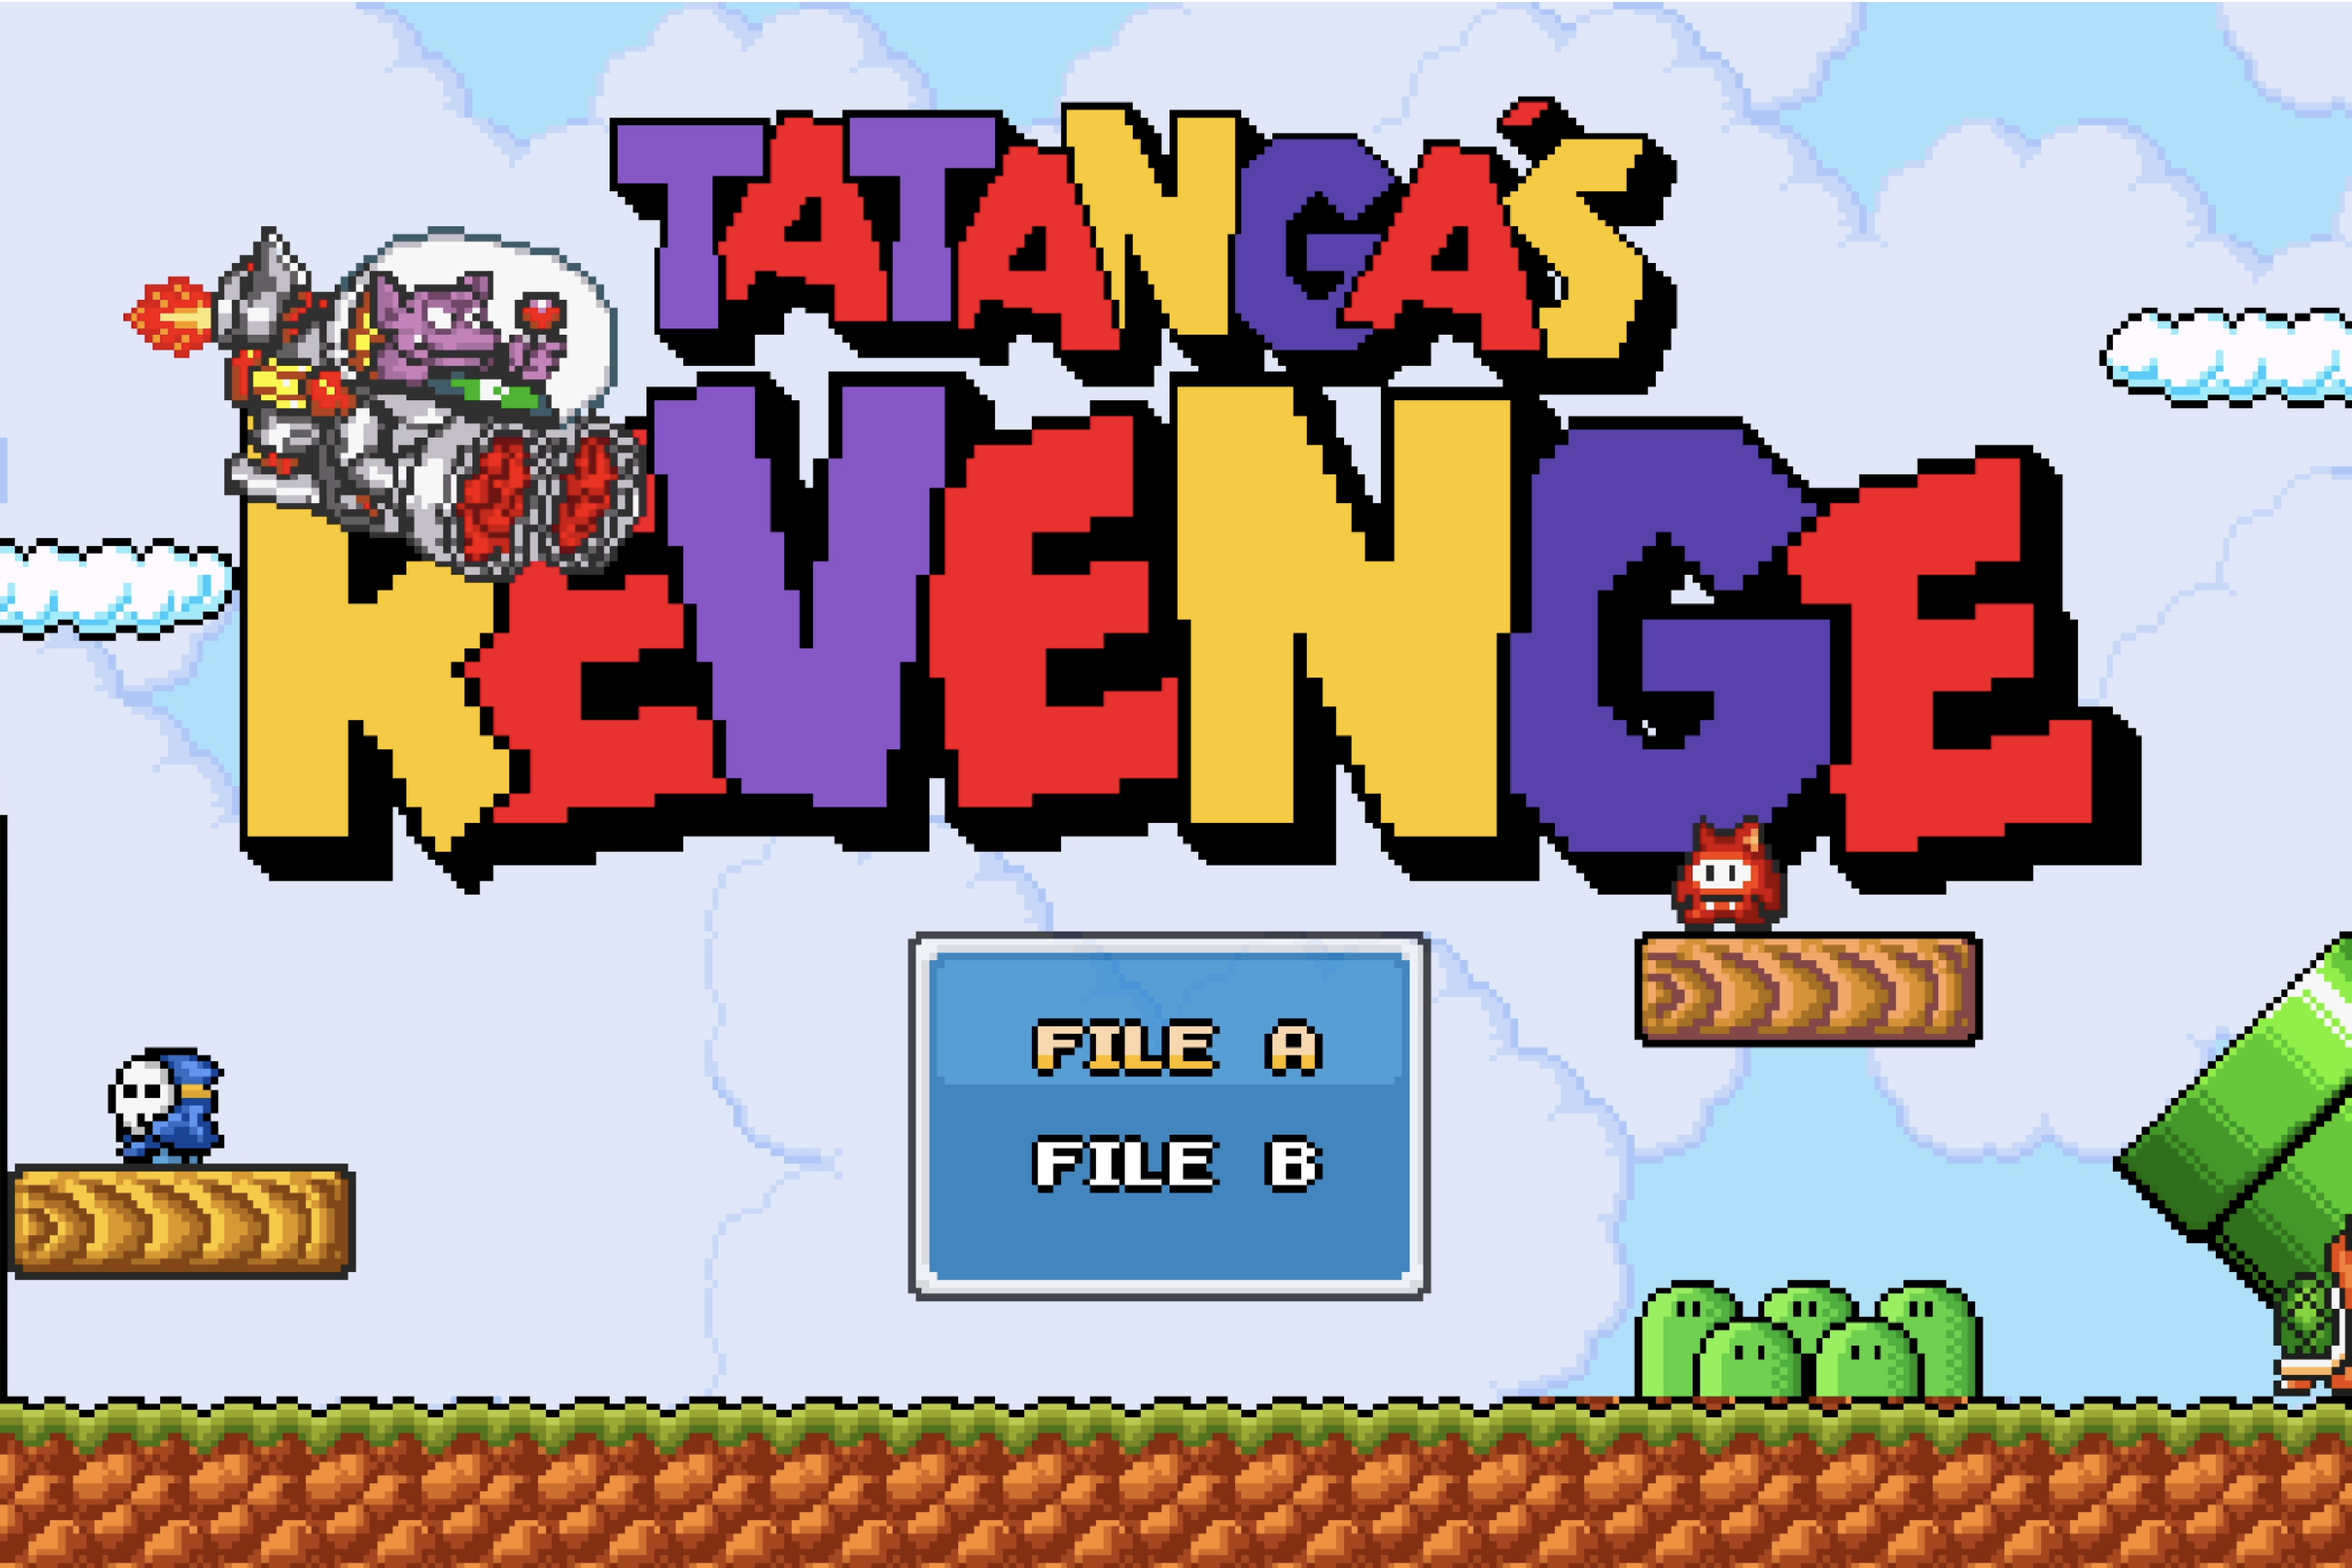 Tatanga's Revenge Coming Soon